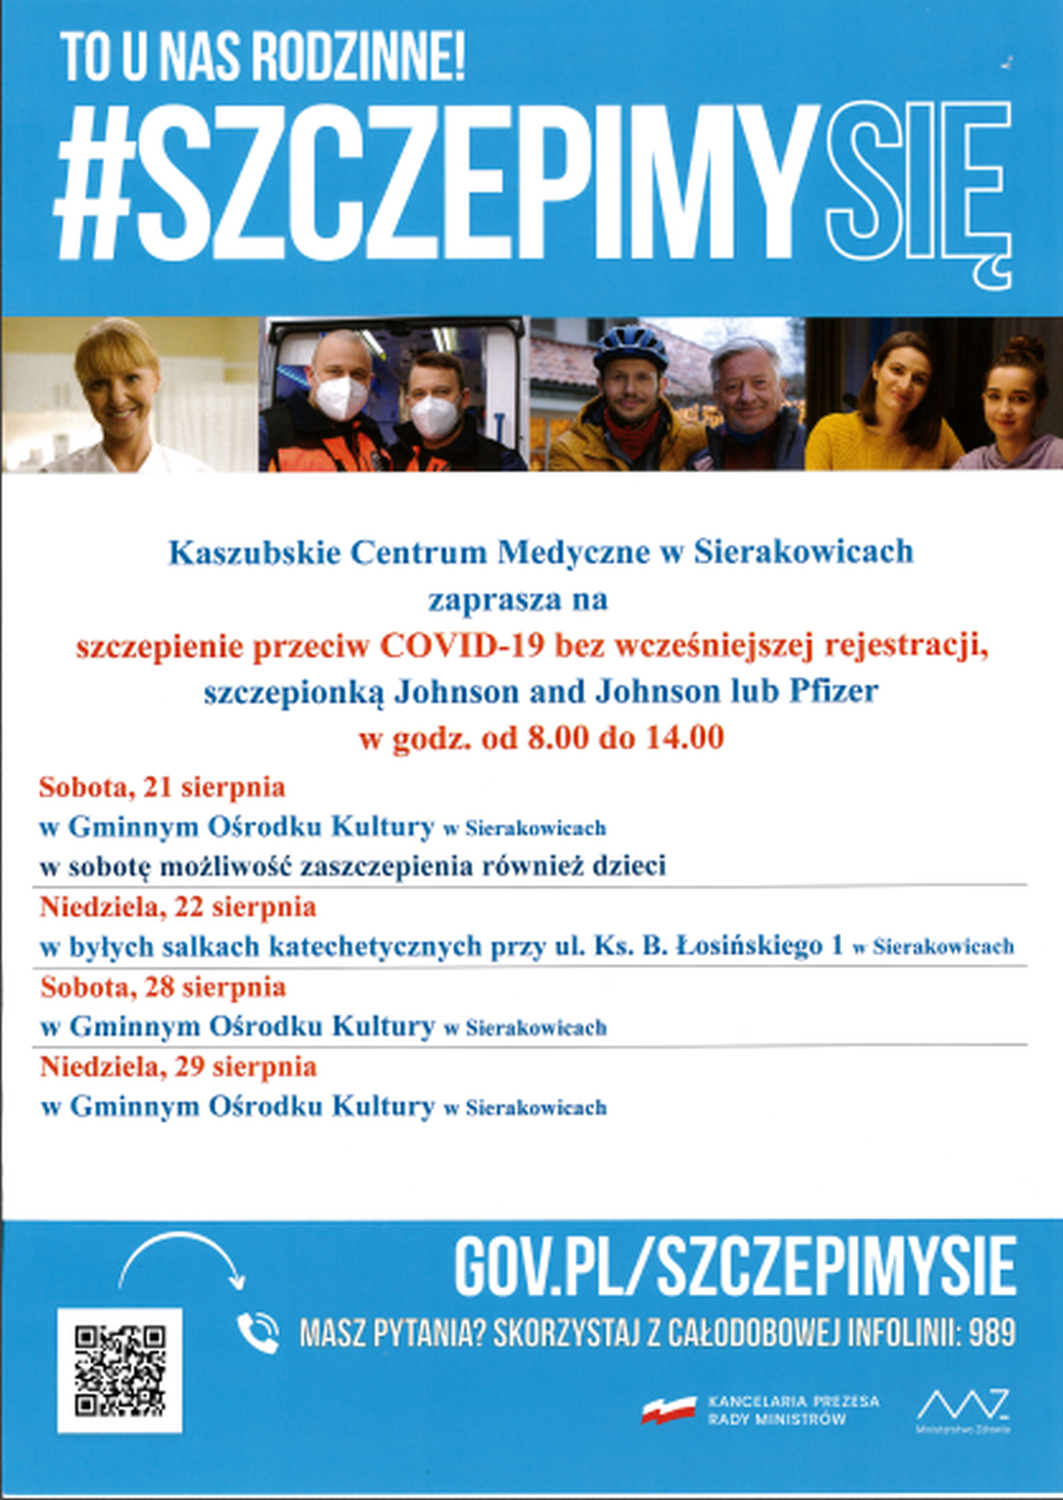 Zaproszenie Kaszubskiego Centrum Medycznego w Sierakowicach na szczepienie przeciw COVID-19 w dniach 21, 22, 28 i 29 sierpnia 2021 r. w godzinach 8.00 - 14.00 